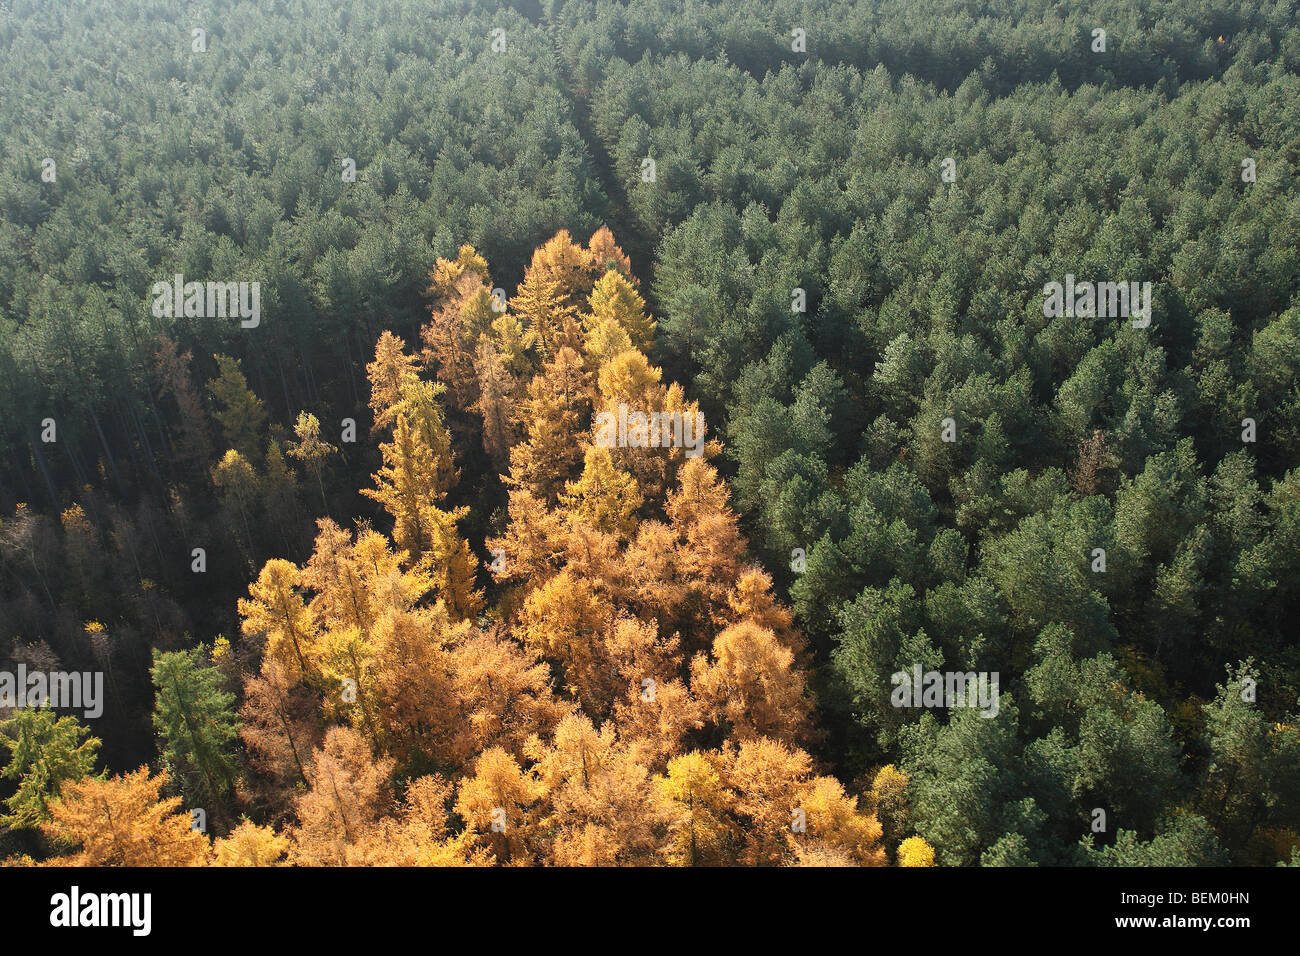 Forêt de pins avec Larix decidua (mélèze d'Europe) de l'air, Belgique Banque D'Images